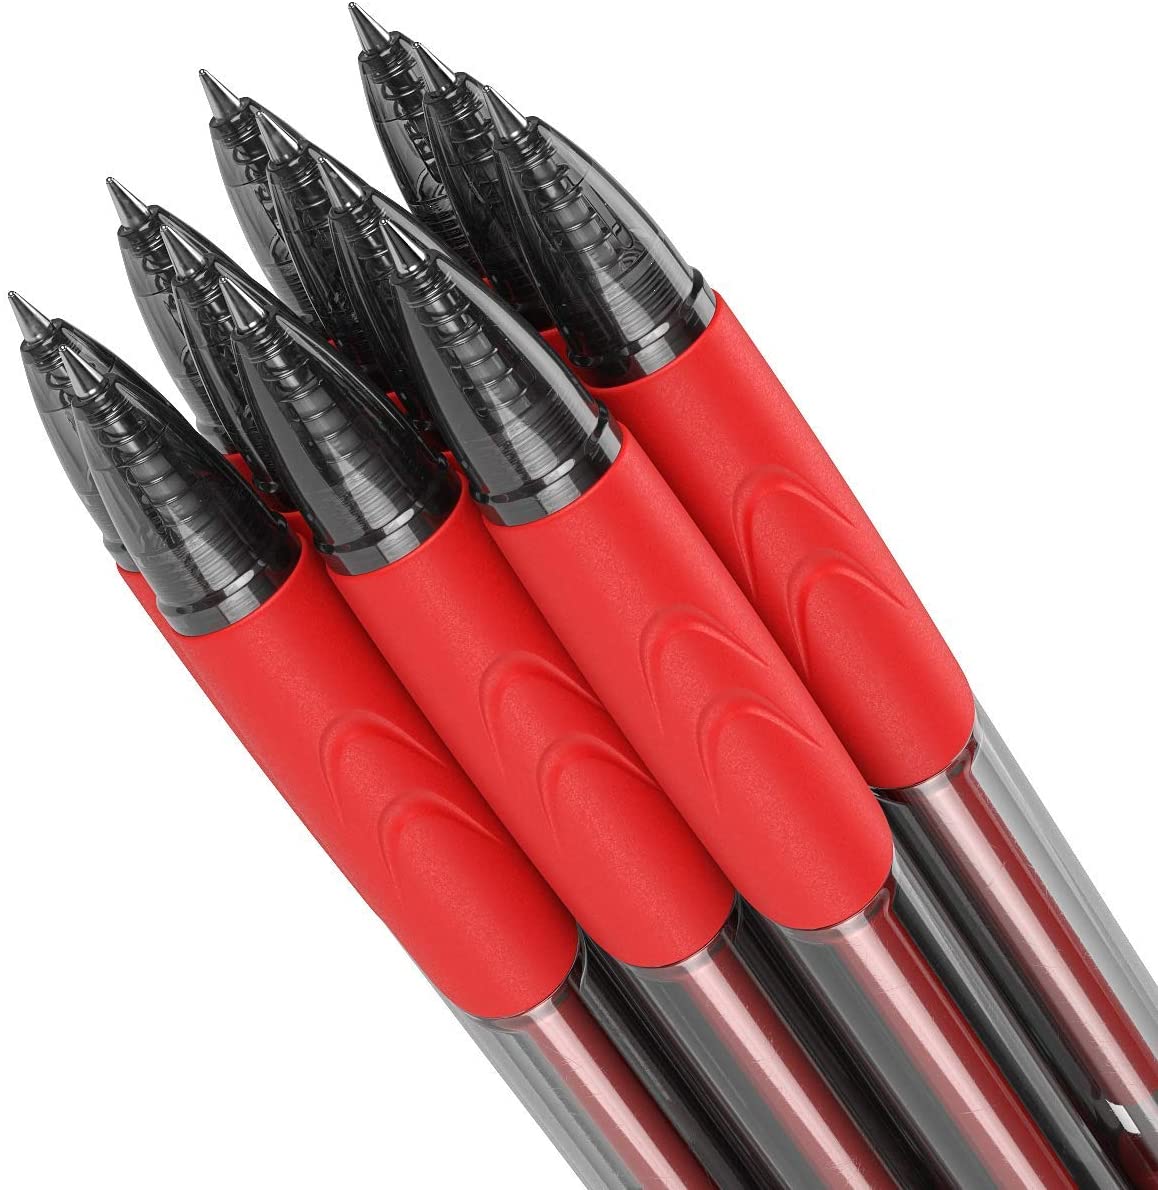 Retractable Gel Ink Pens, Red - 24 Pack